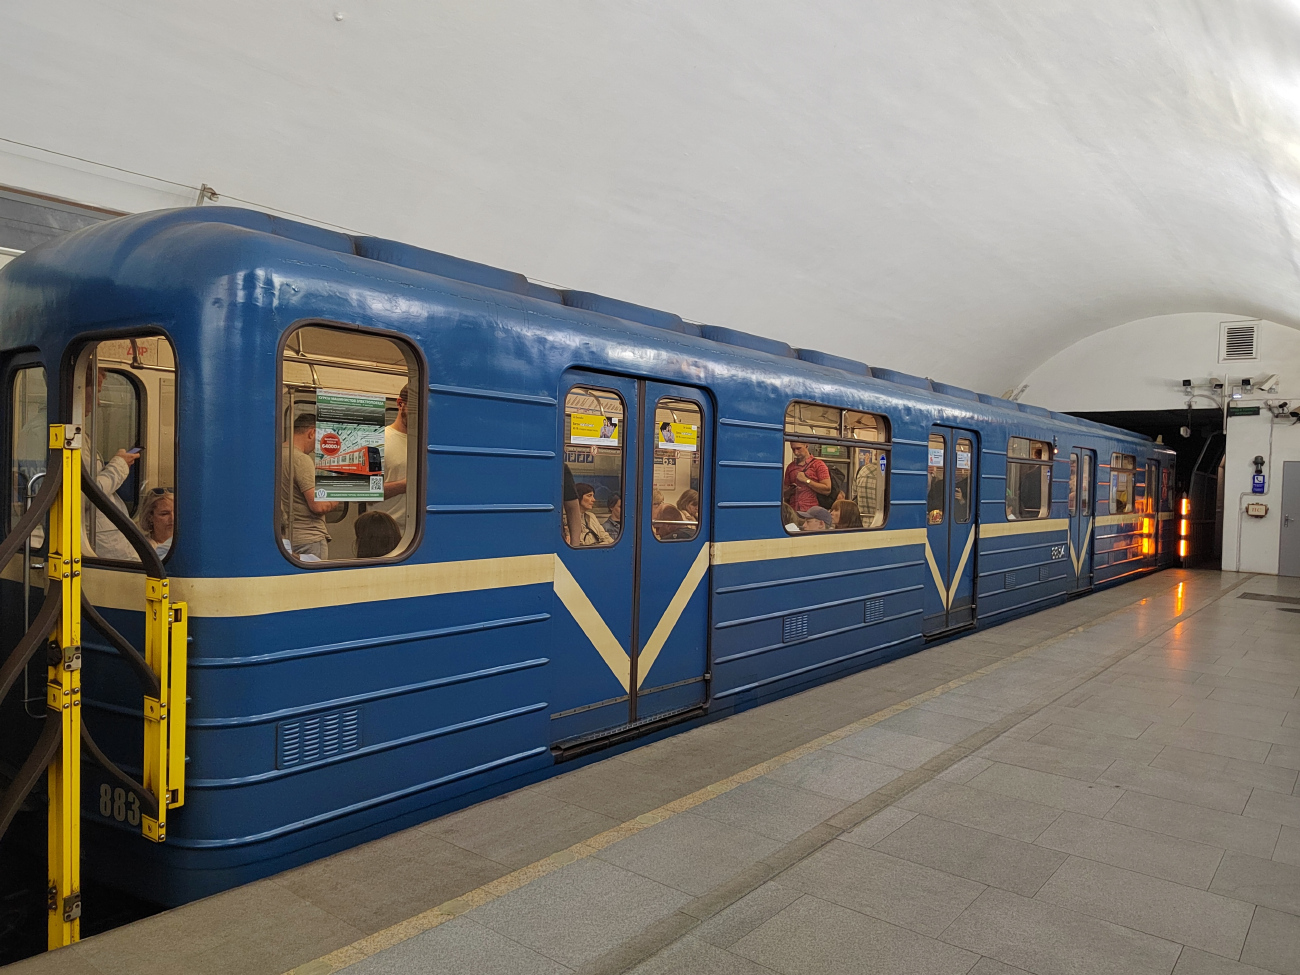 Sanktpēterburga, 81-717 (LVZ) № 8834